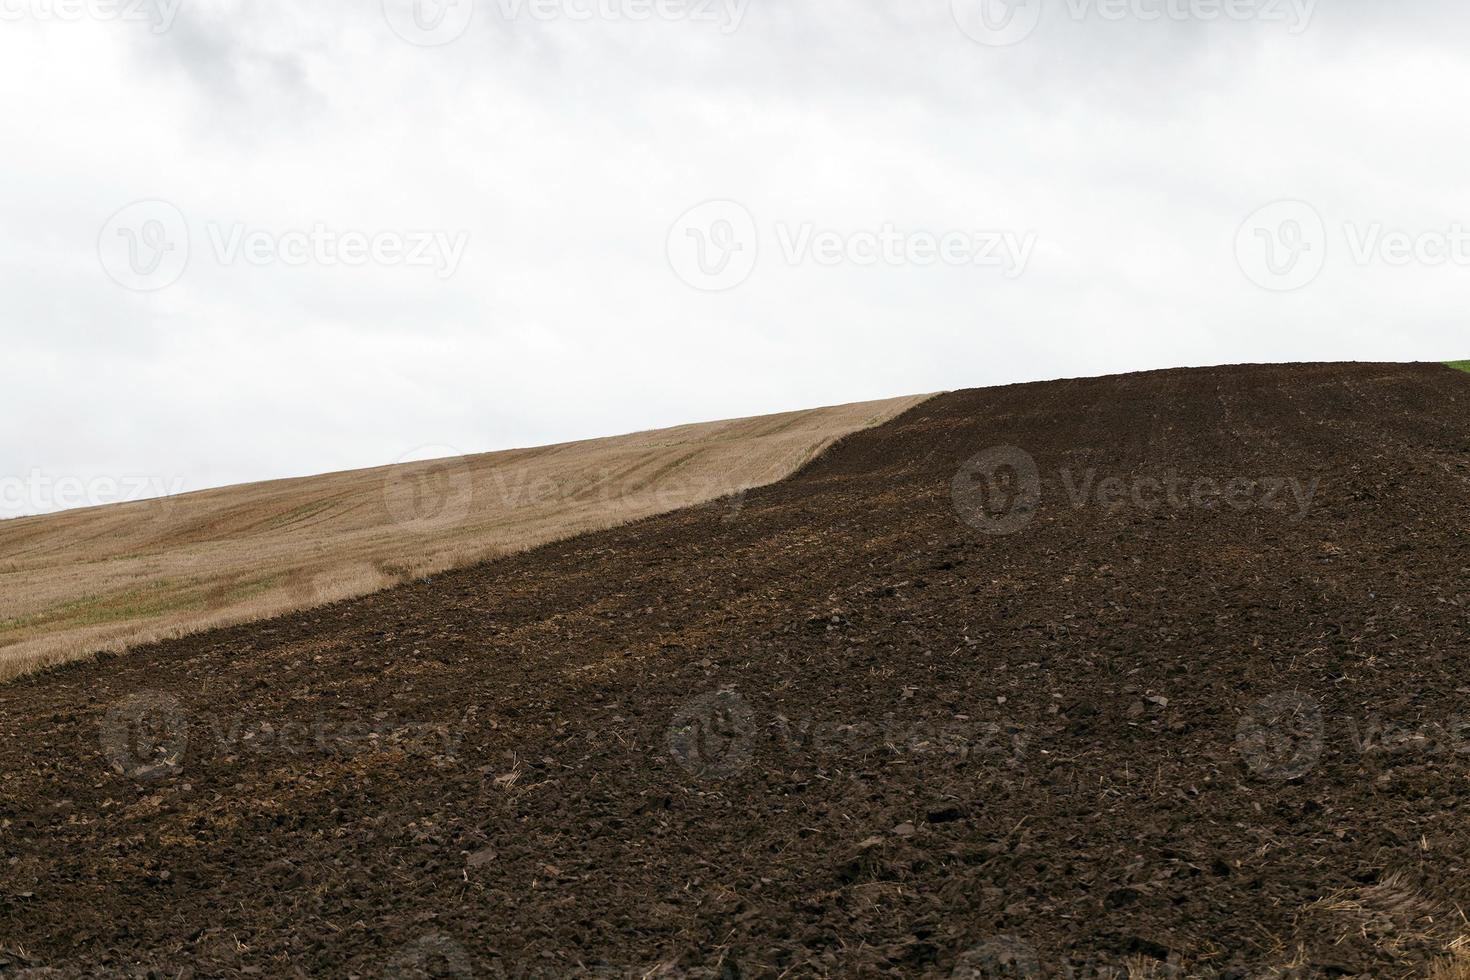 plowed earth in a field photo